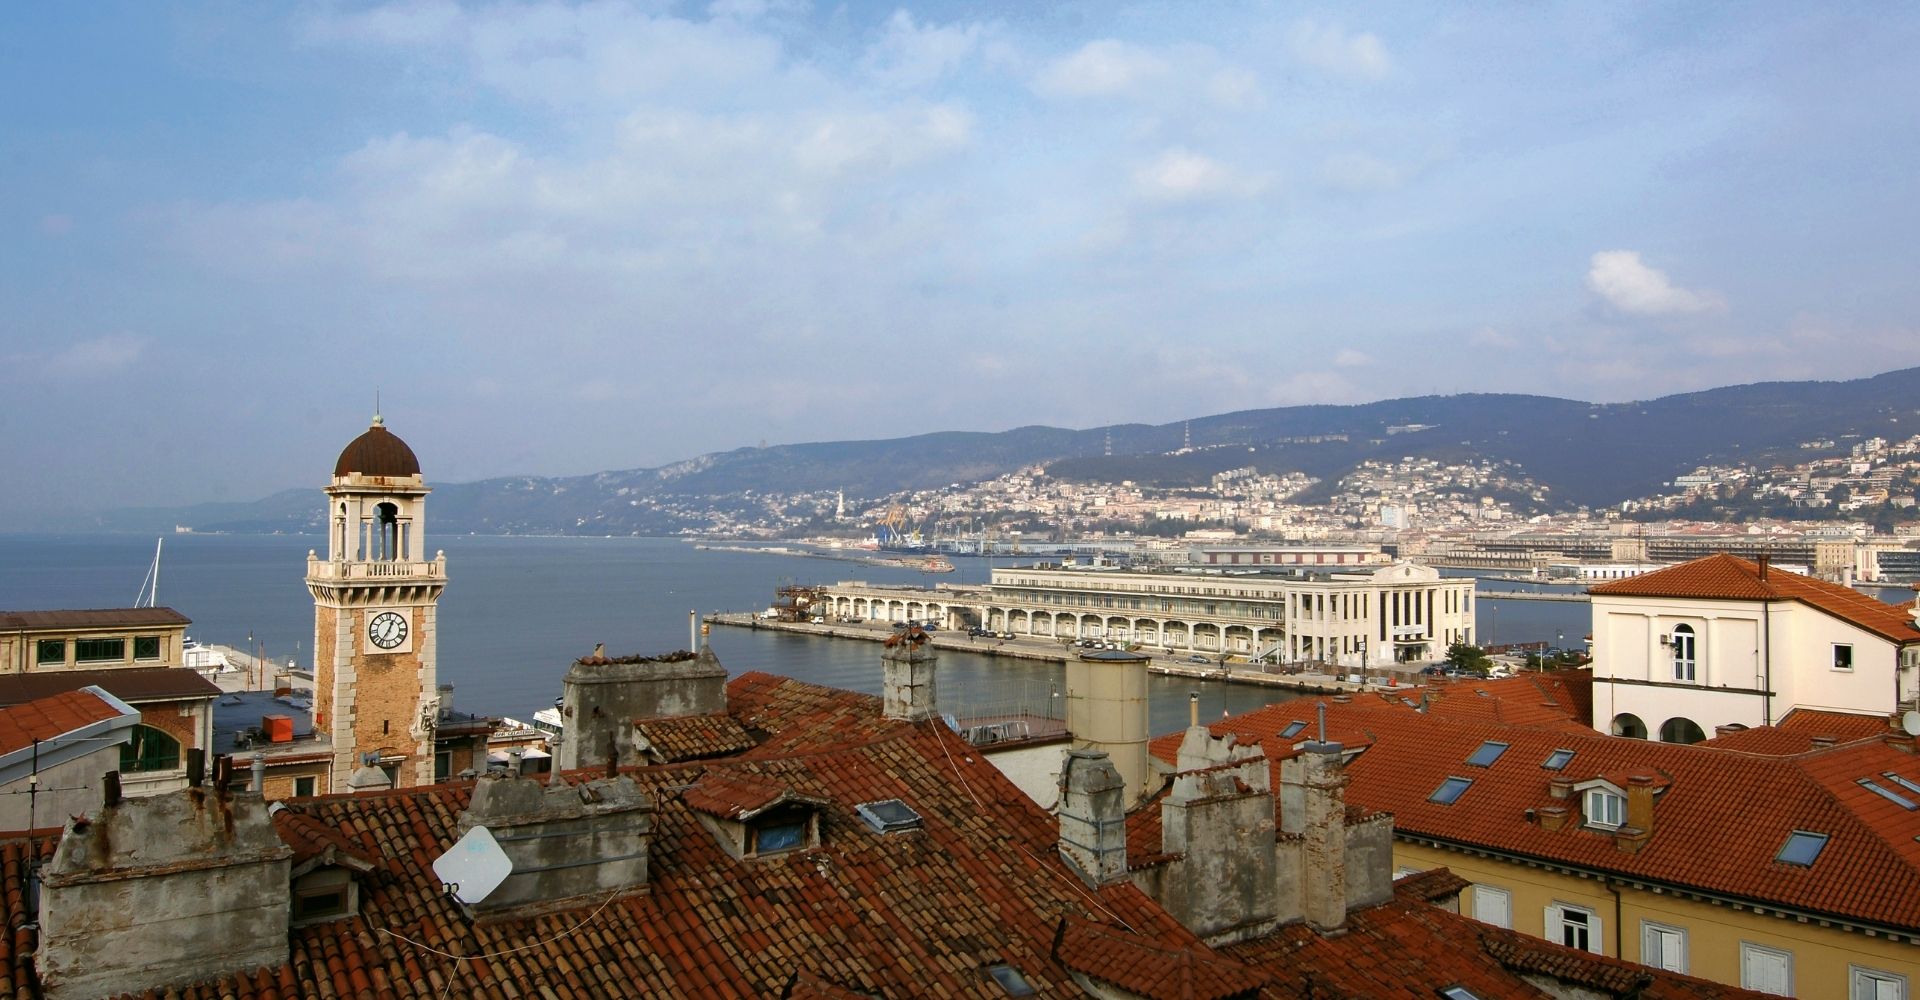 Veduta aerea della città di Trieste